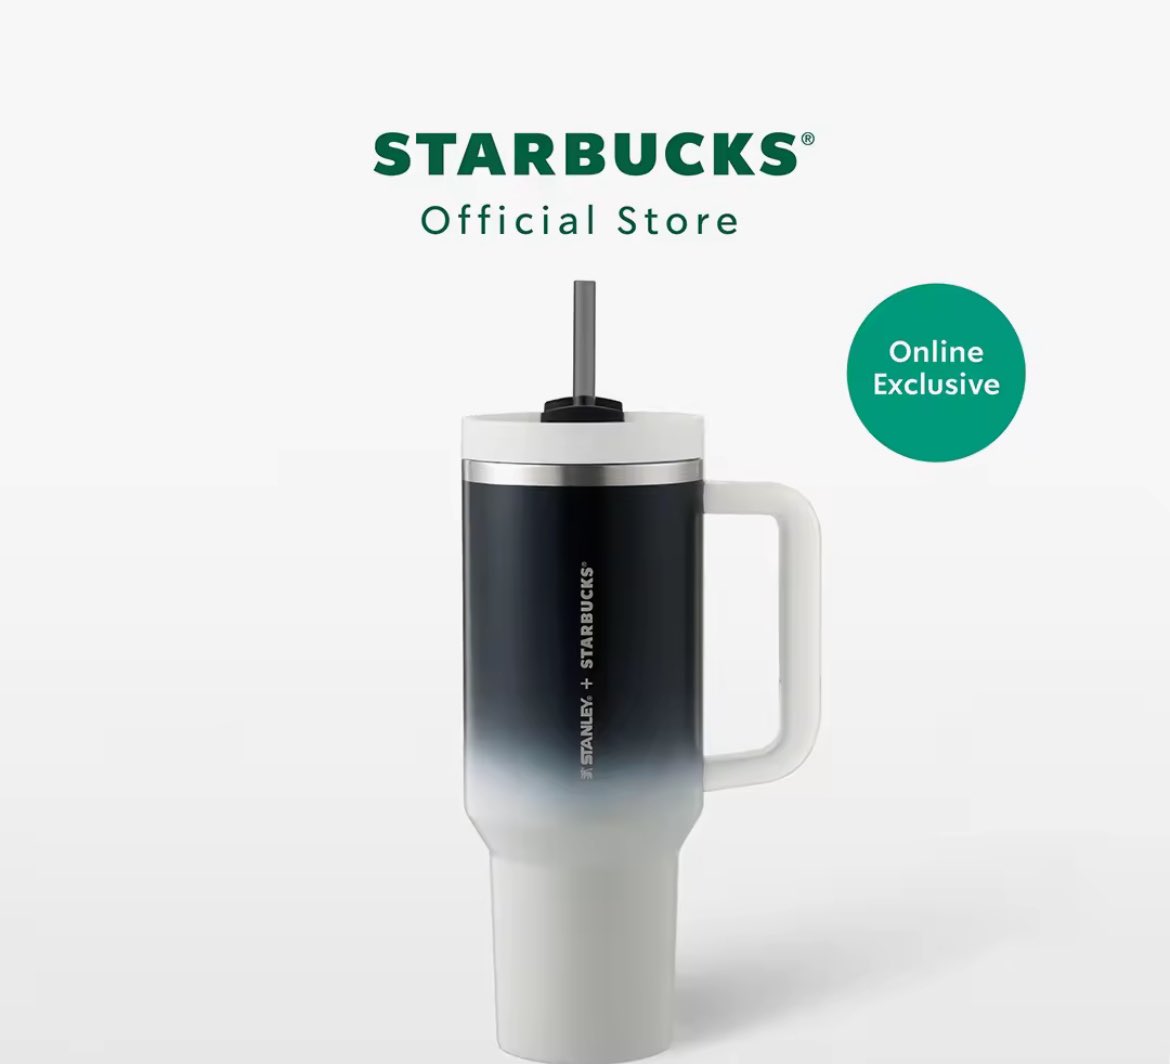 มีแก้ว Starbucks Stanley 40oz. ทัมเบลอร์สตาร์บัคส์ ขนาด 40ออนซ์ ค่าา 2150 รวมส่งค่าา
#starbucks #Starbucks #แก้วสตาร์บัค #สตาร์บัค #รับหิ้ว #รับหิ้วสตาร์บัค #starbucksthailand #starbucksth